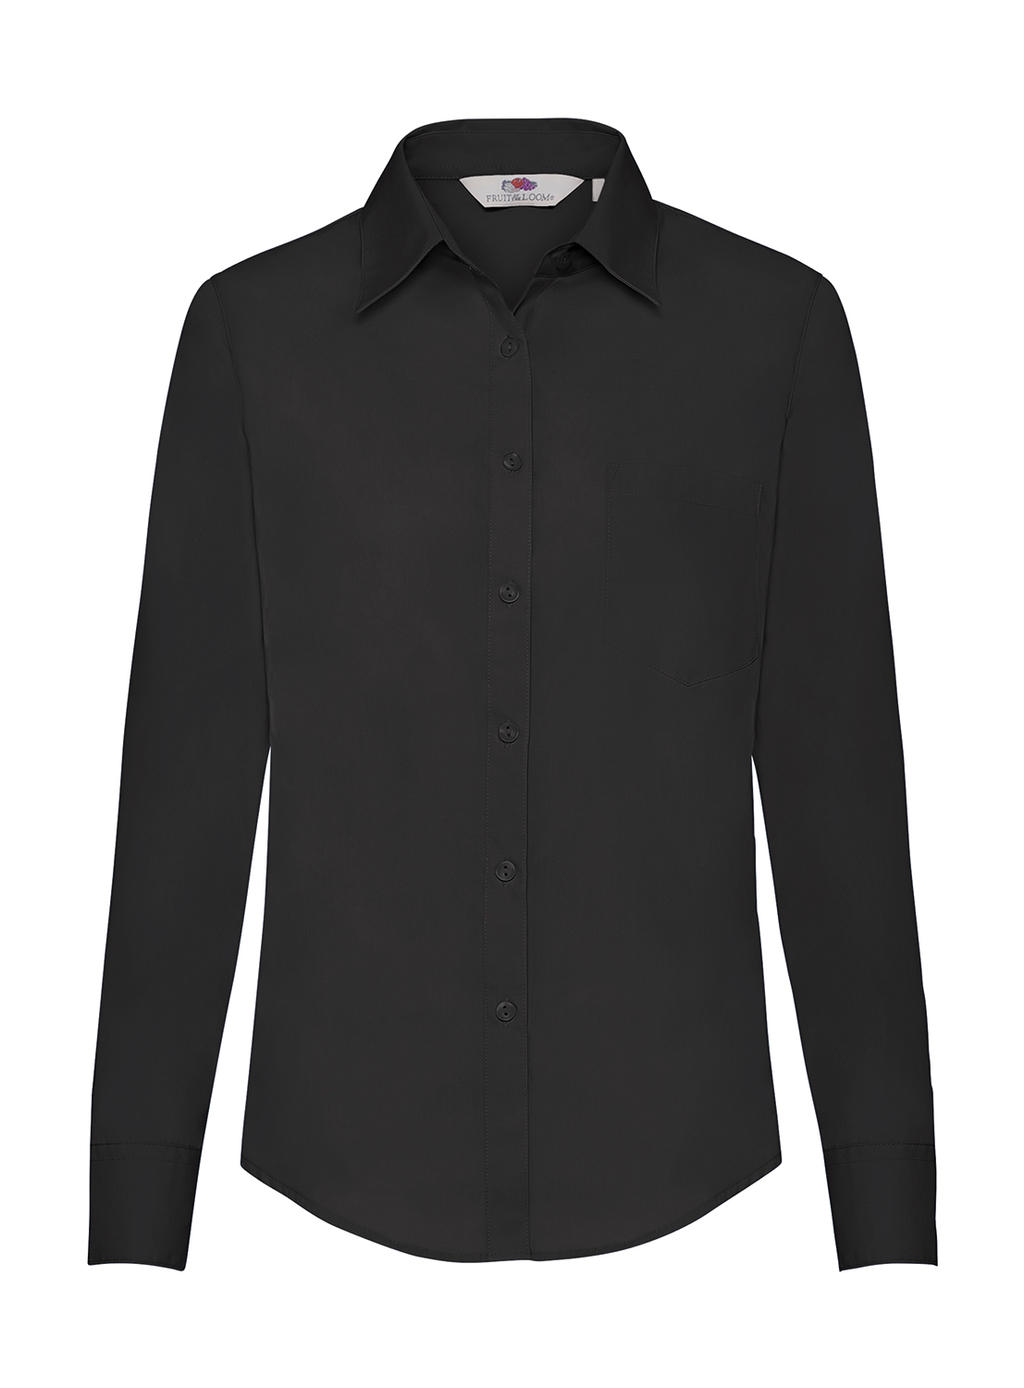  Ladies Poplin Shirt LS in Farbe Black